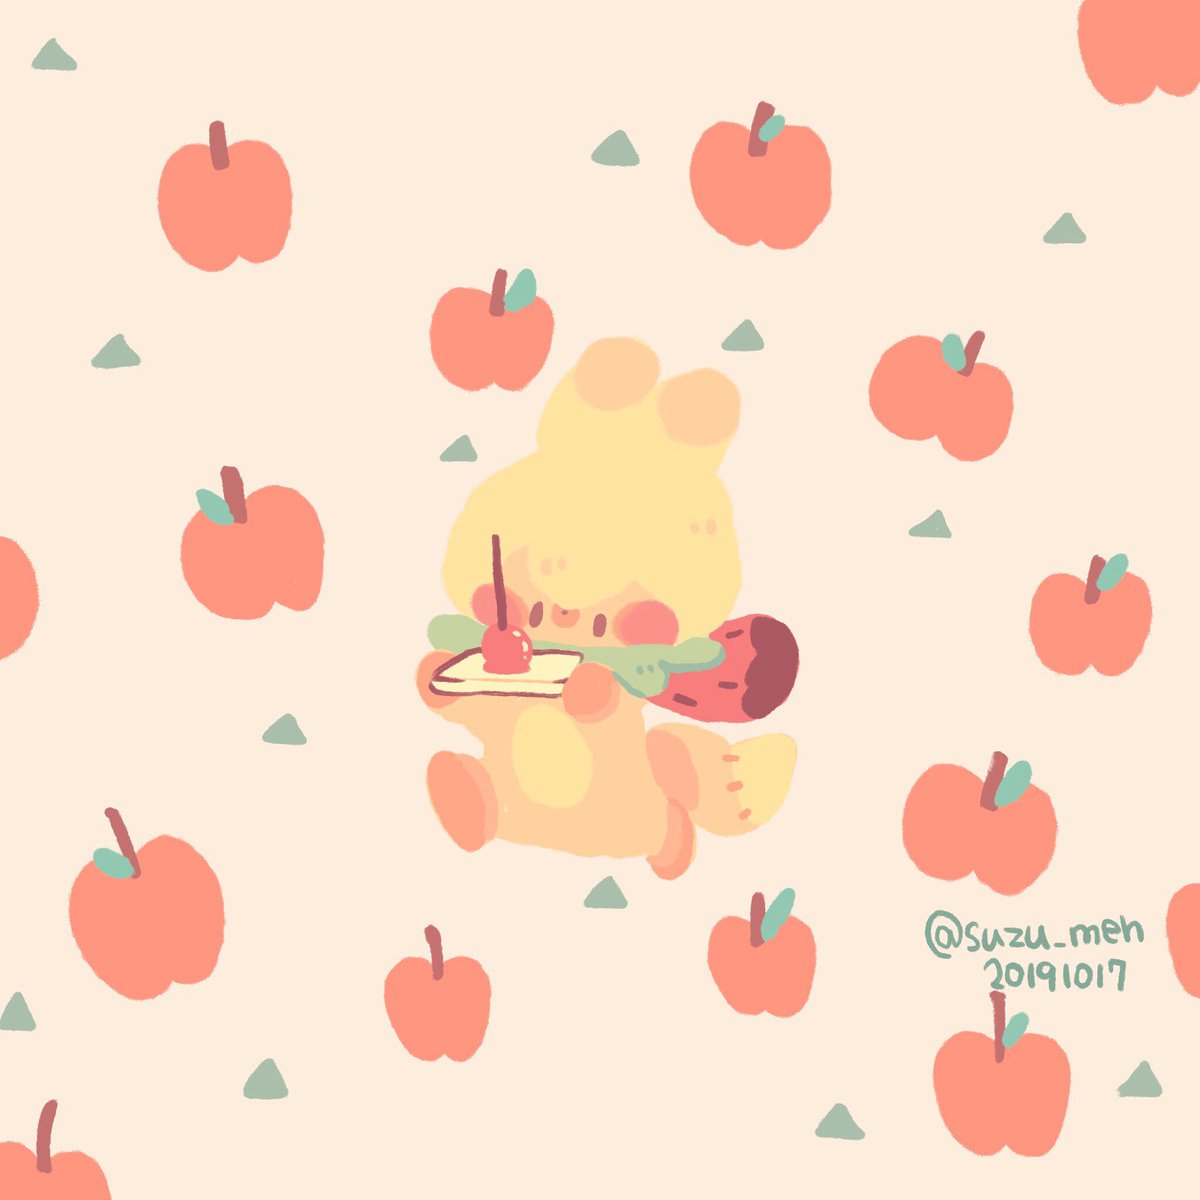 ササクラ りんご飴 食べてみたいなぁ イラスト 絵 絵描き 癒し かわいい キツネ りんご飴 りんご いちご メーとスズメの友達 T Co Iqkjwpjwqn Twitter